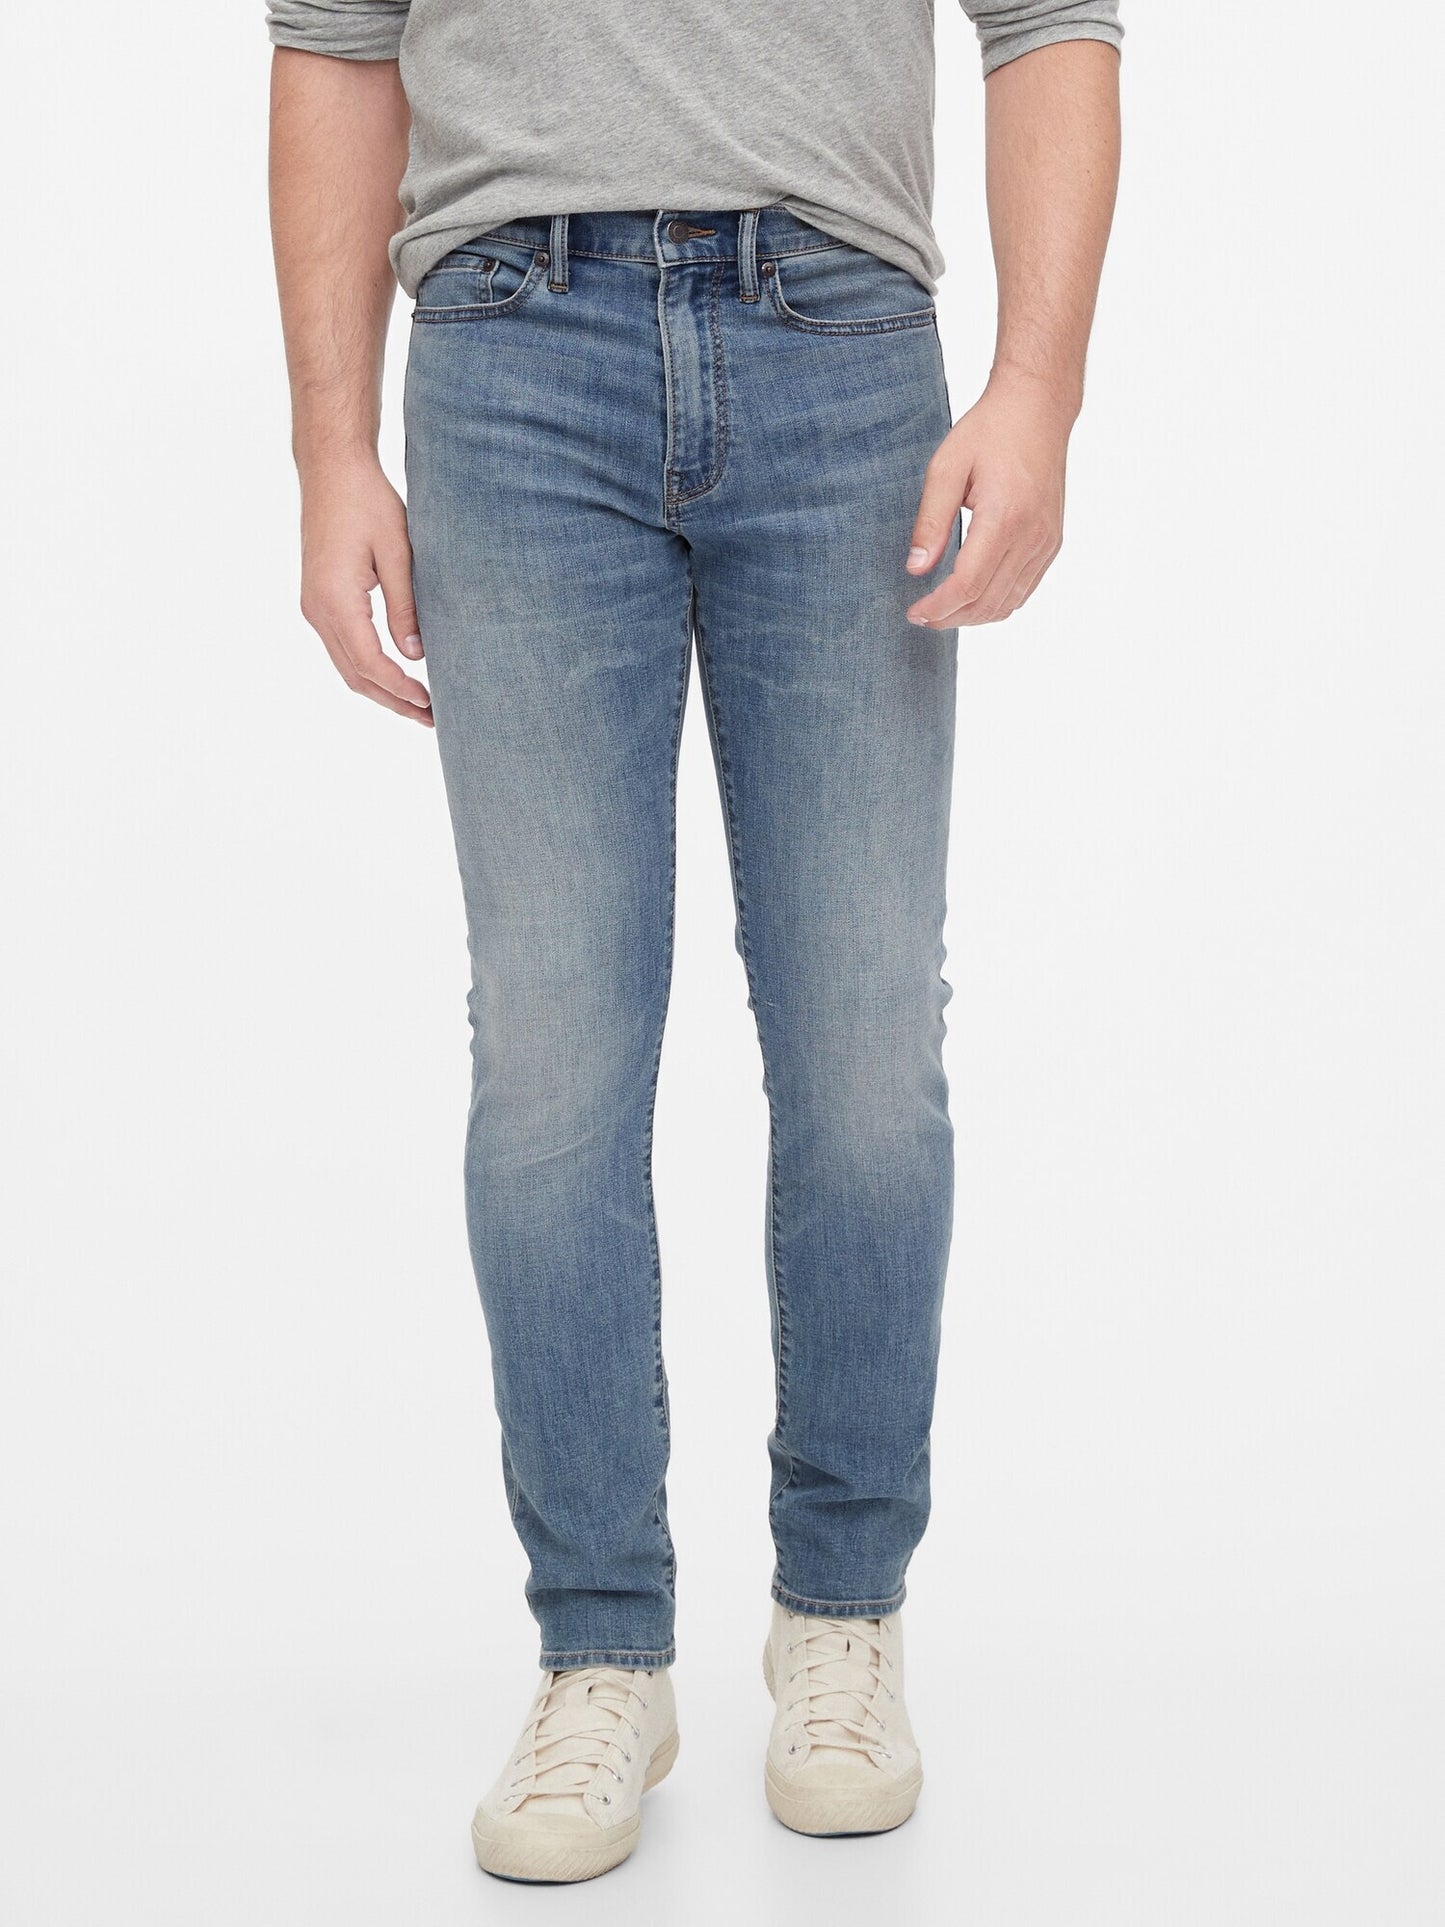 Gap Soft Wear Slim Taper Jeans With Washwell&#153 - Medium Wash